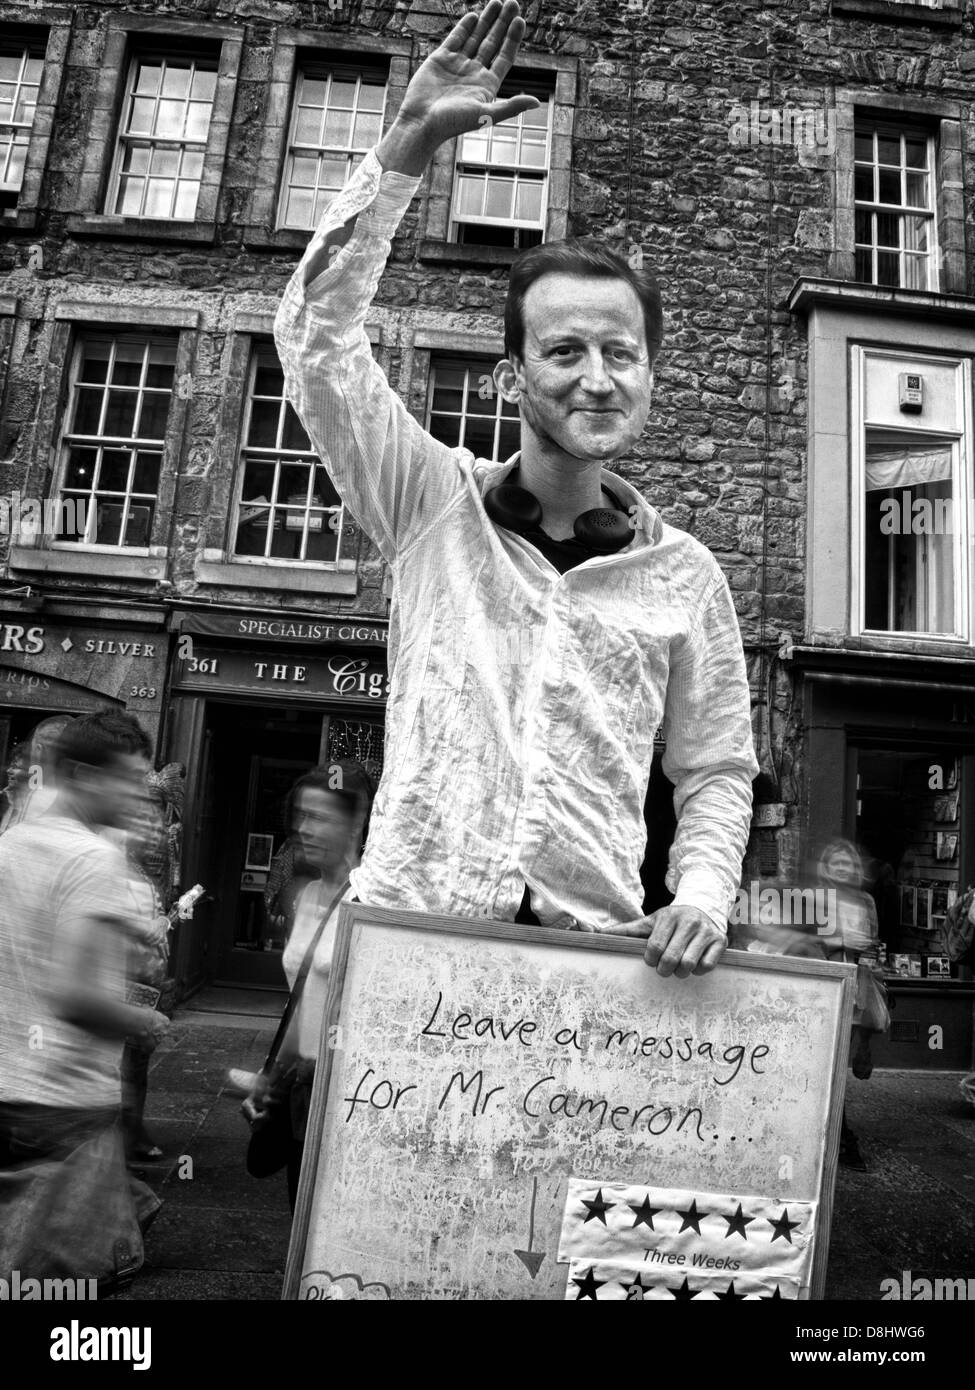 Laisser un message pour le député britannique, David Cameron , satire au Festival d'Édimbourg Royaume-uni Août Banque D'Images